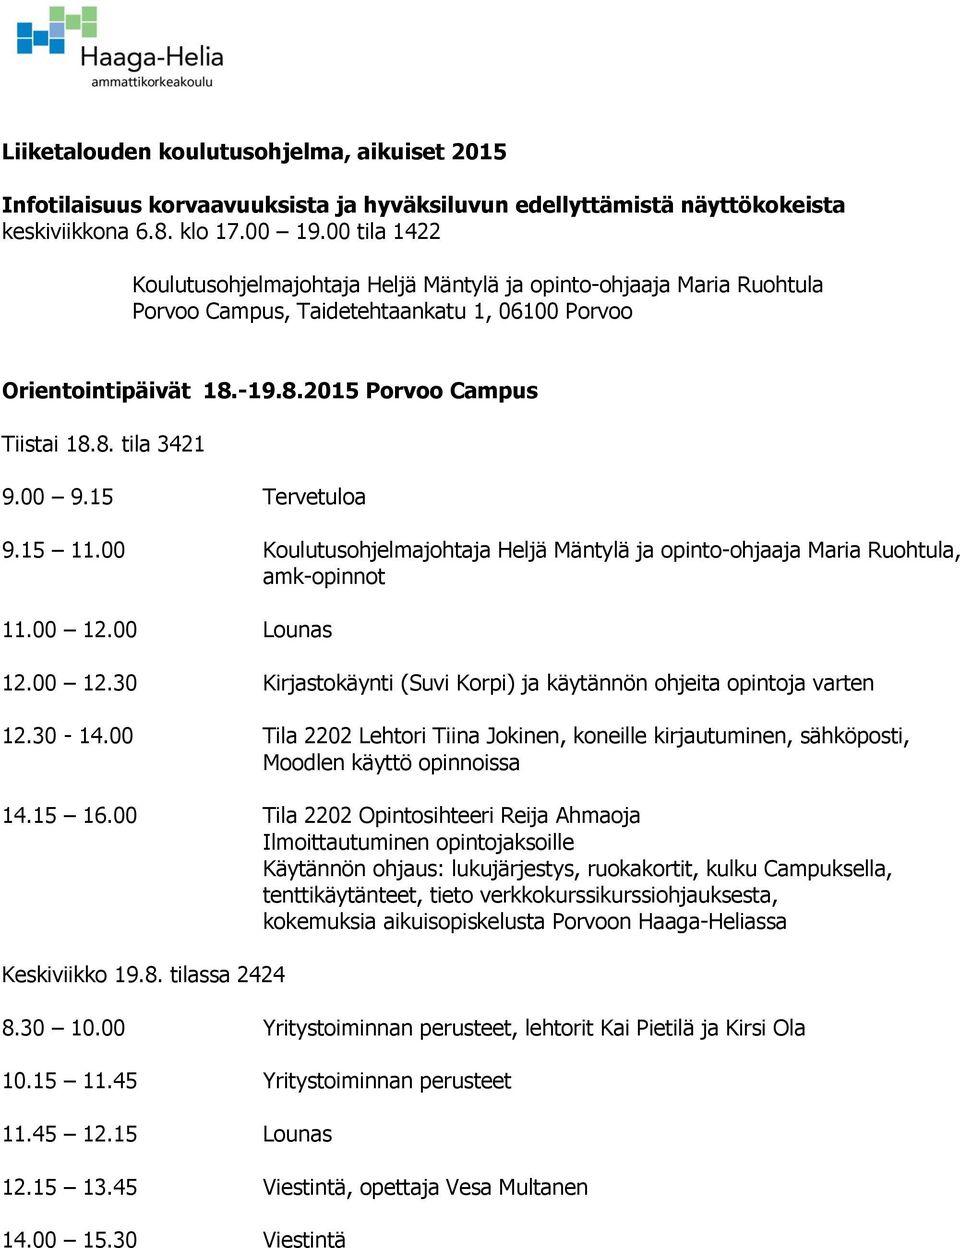 00 9.15 Tervetuloa 9.15 11.00 Koulutusohjelmajohtaja Heljä Mäntylä ja opinto-ohjaaja Maria Ruohtula, amk-opinnot 11.00 12.00 Lounas 12.00 12.30 Kirjastokäynti (Suvi Korpi) ja käytännön ohjeita opintoja varten 12.